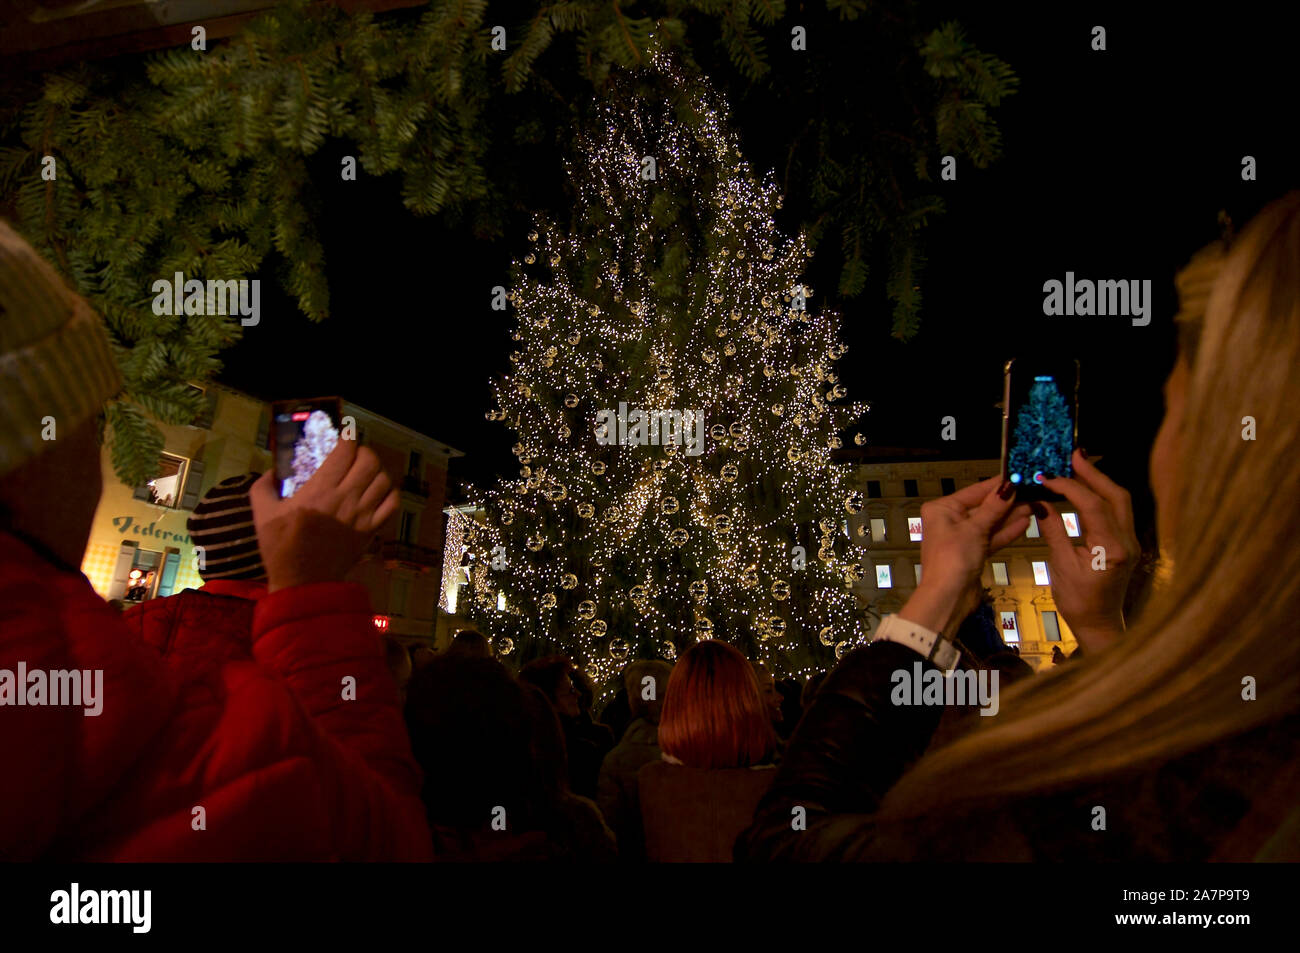 Decorazioni Natalizie Lugano.Lugano Christmas Immagini E Fotos Stock Alamy